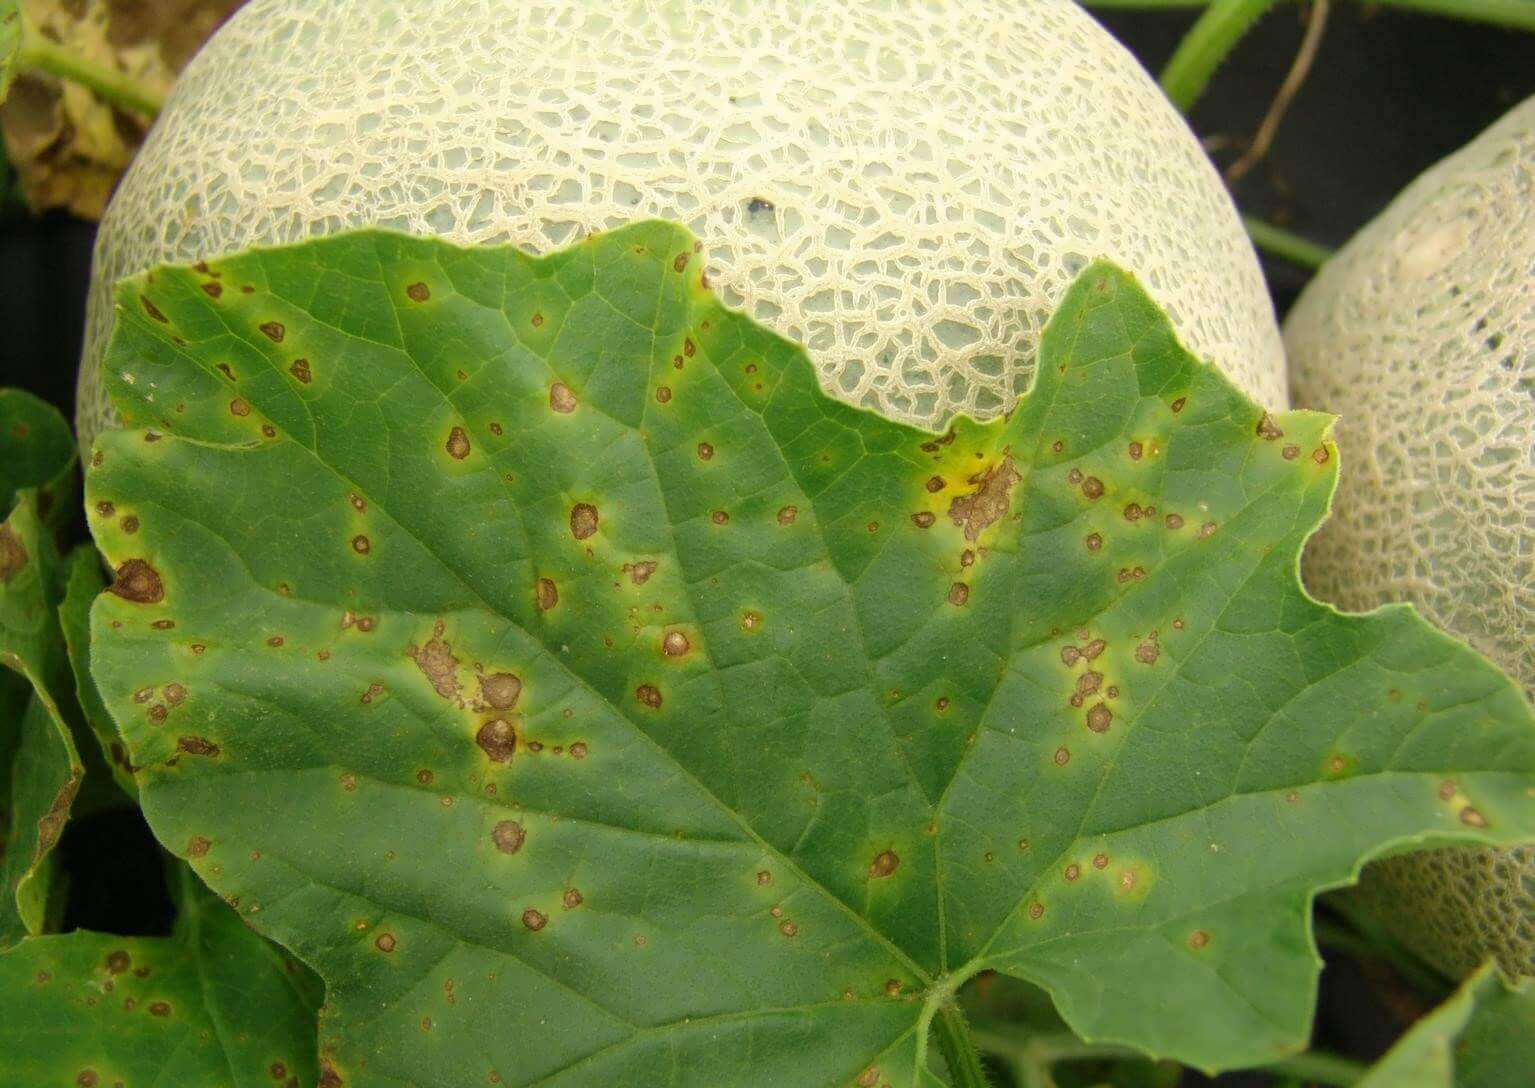 Alternaria cucumerina hastalığının kavun yapraklarında belirtisi